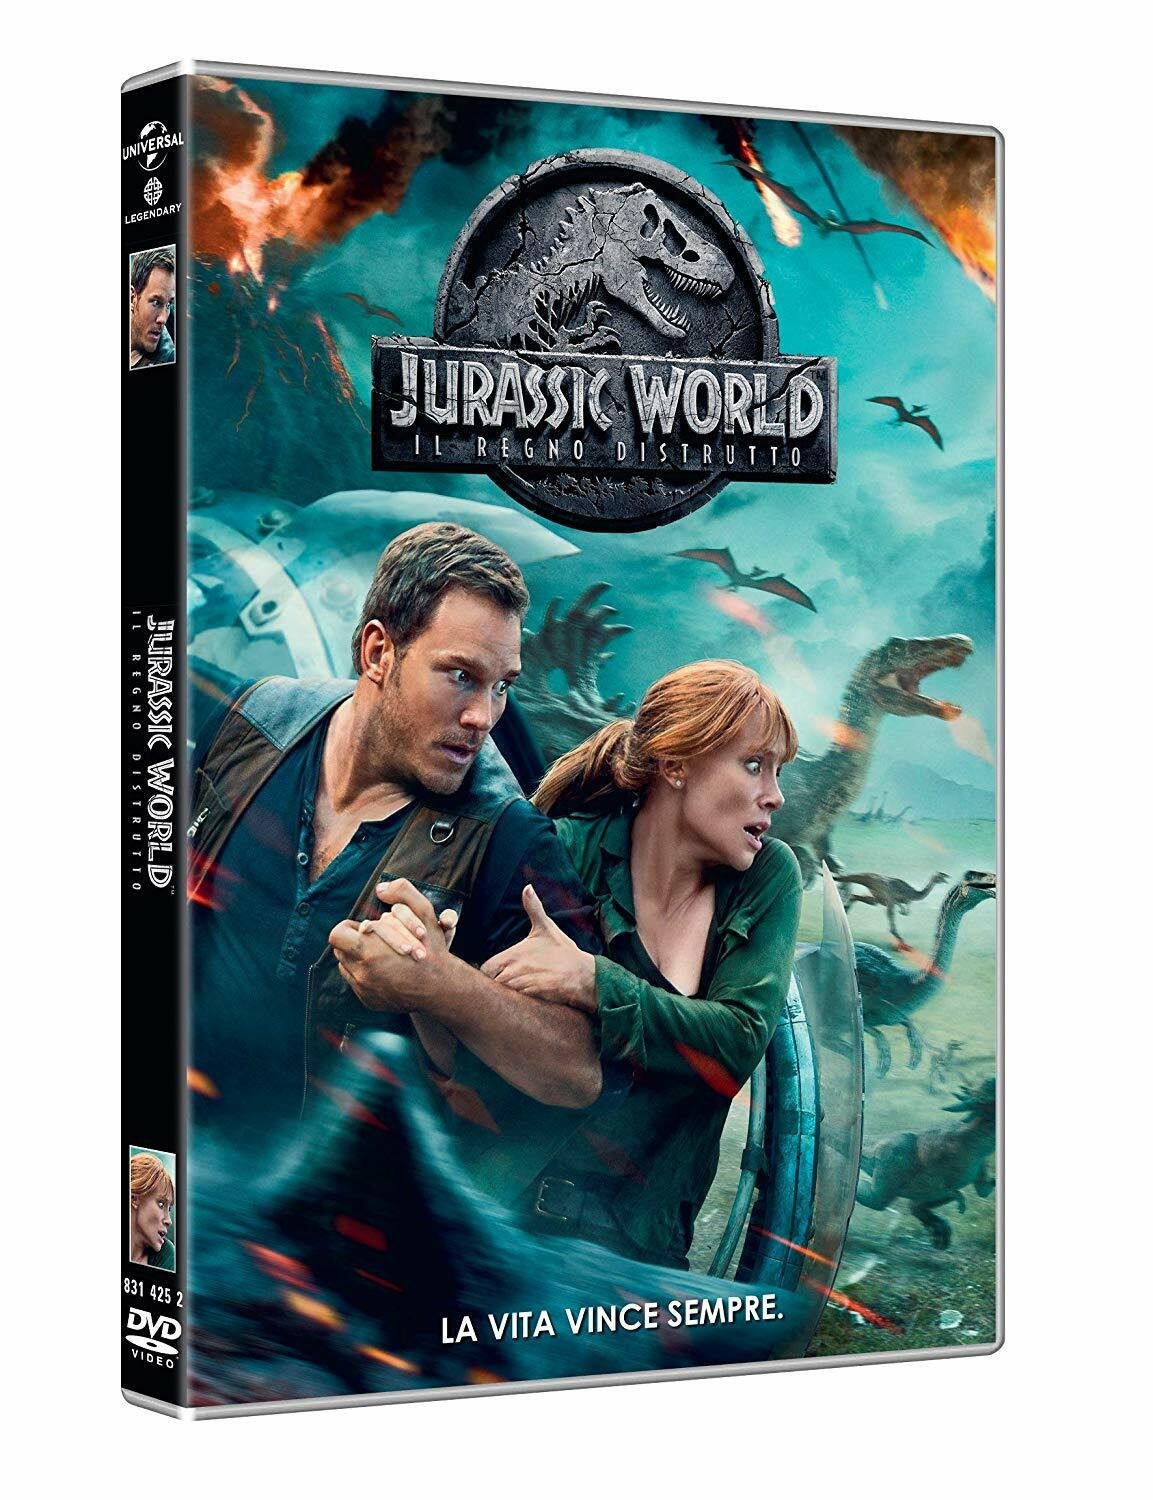 Il formato DVD di Jurassic World: Il regno distrutto